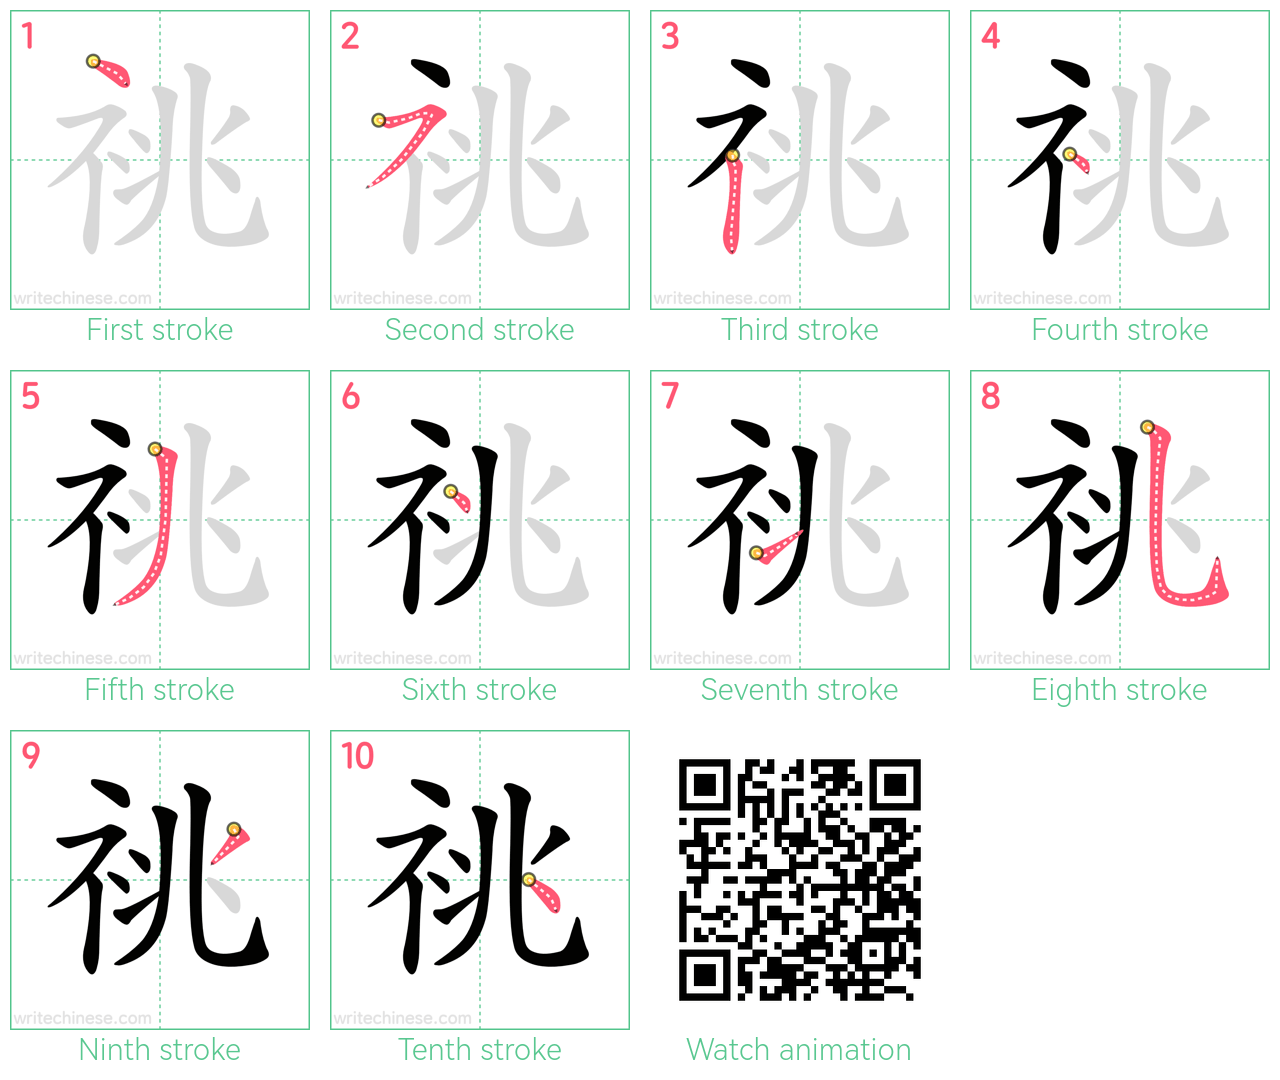 祧 step-by-step stroke order diagrams